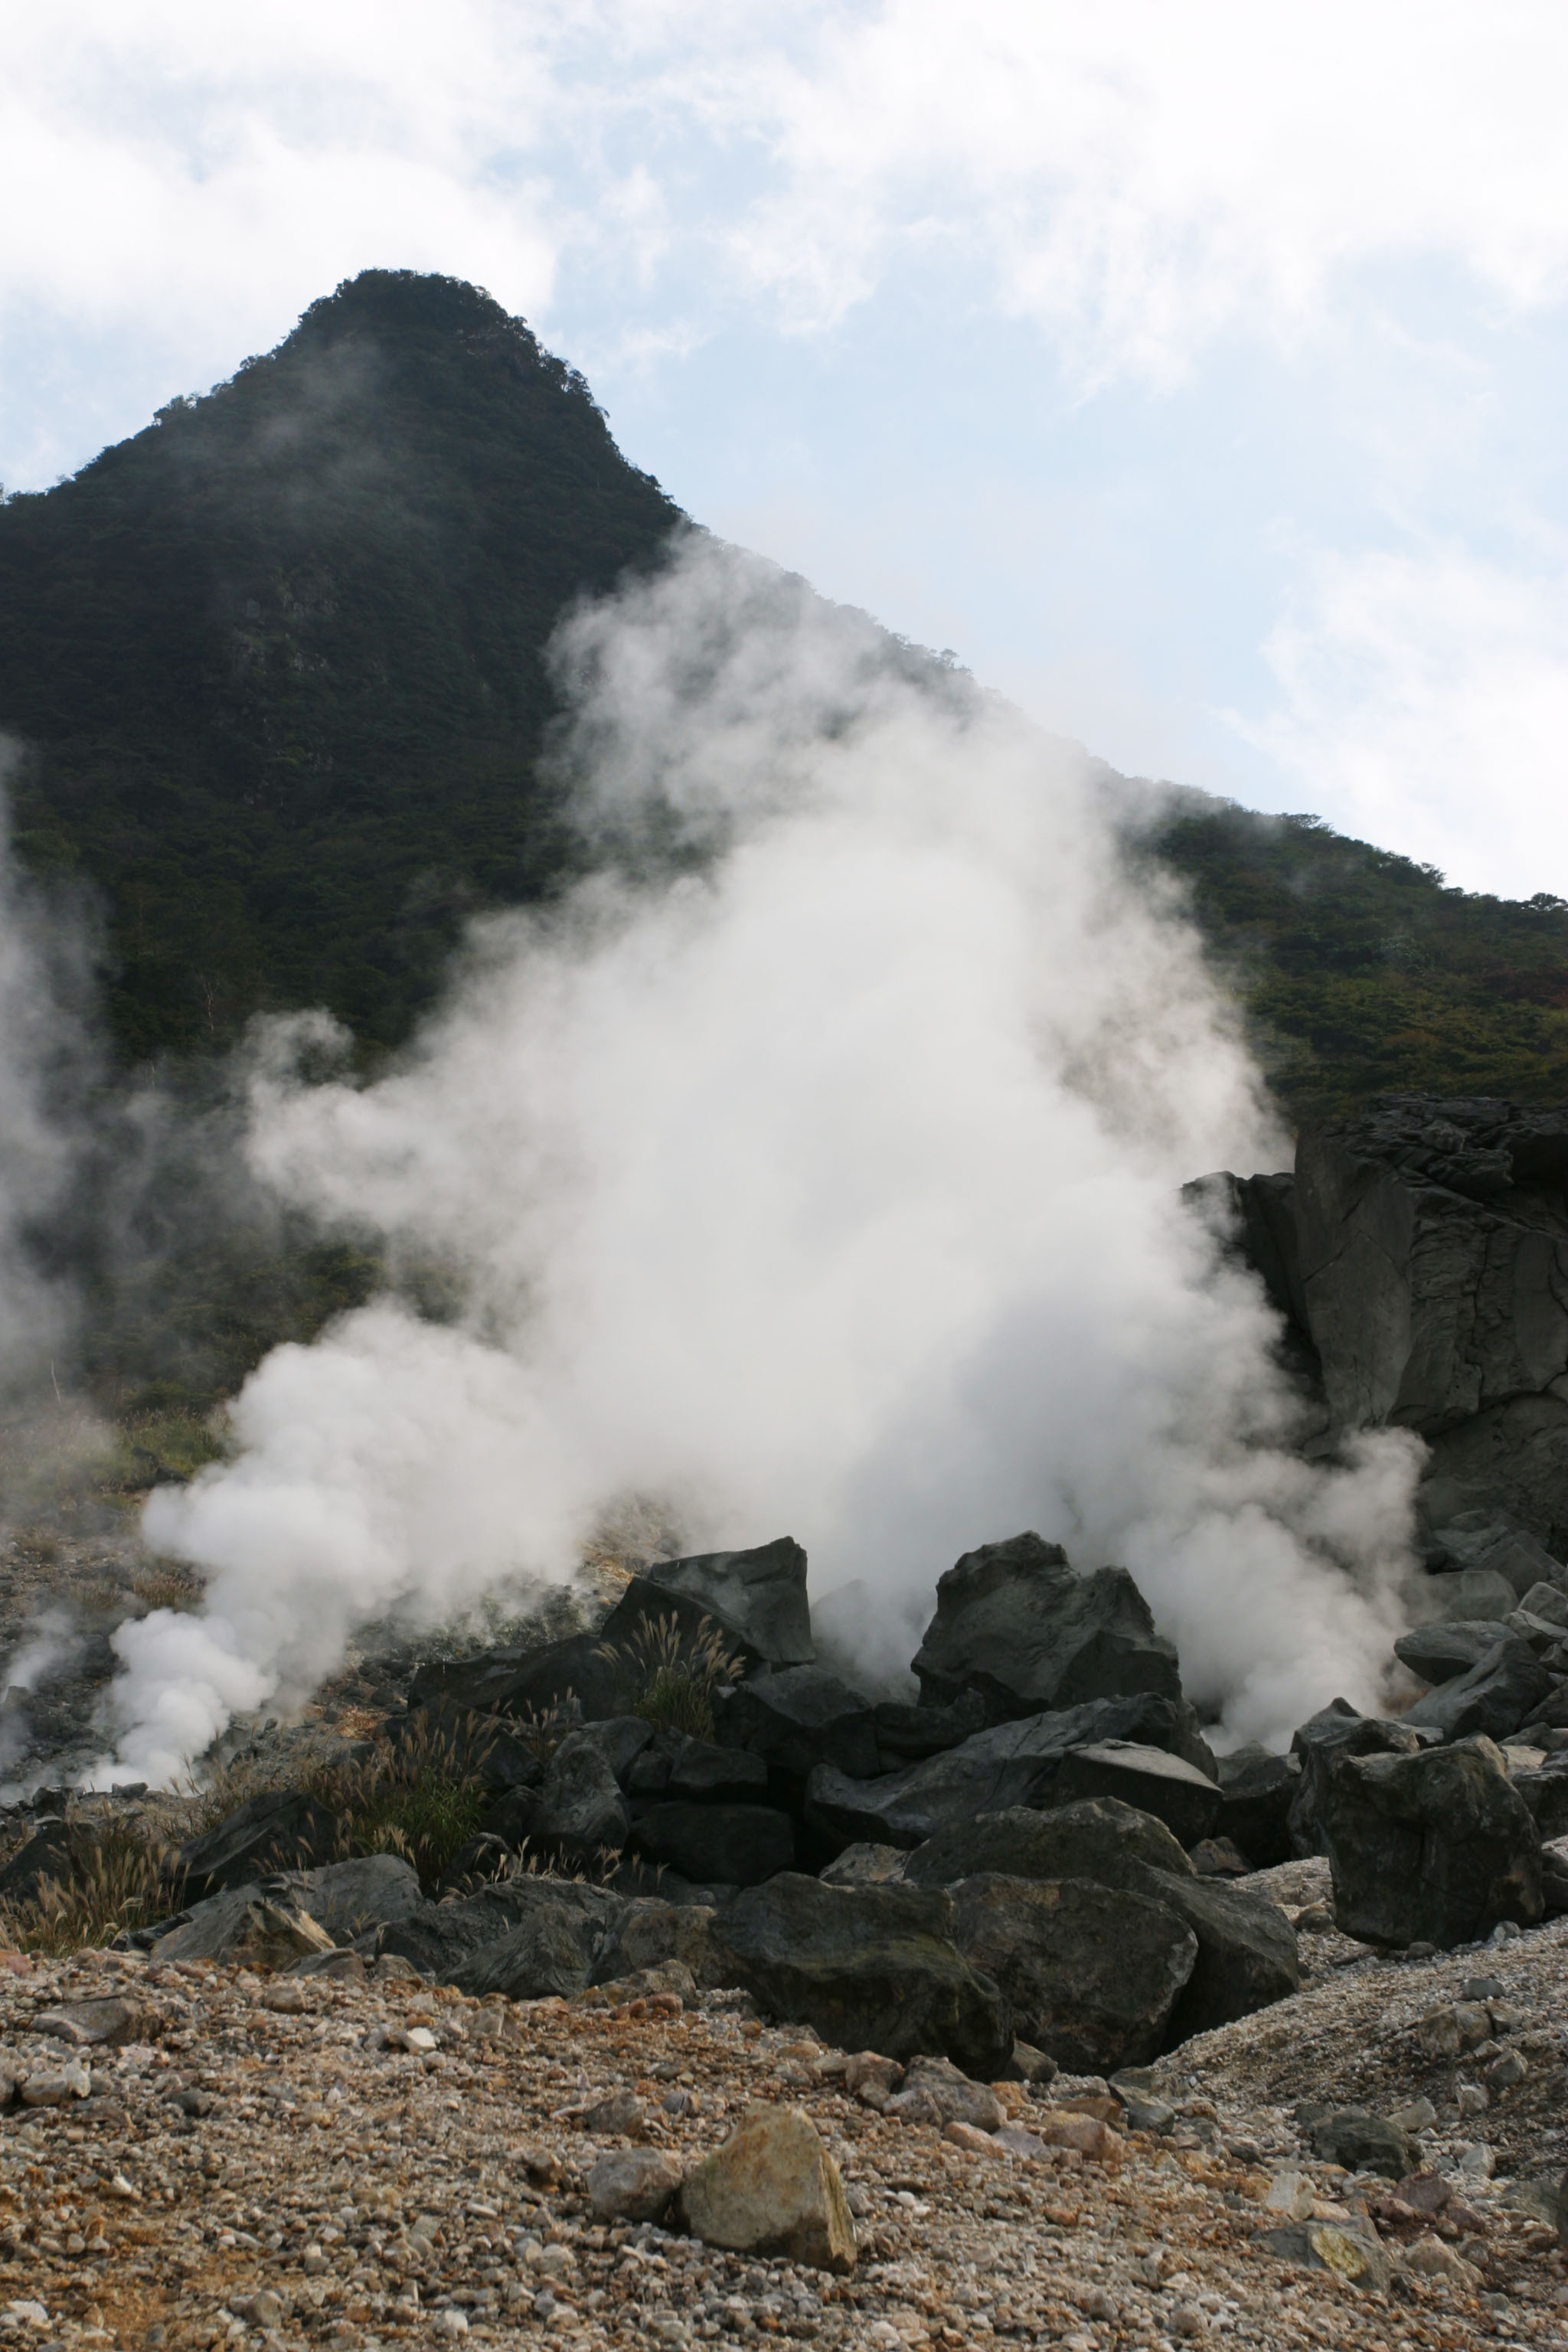 fotografia, materiale, libero il panorama, dipinga, fotografia di scorta,Ohwakudani, Hakone, vulcano, calore terrestre, montagna